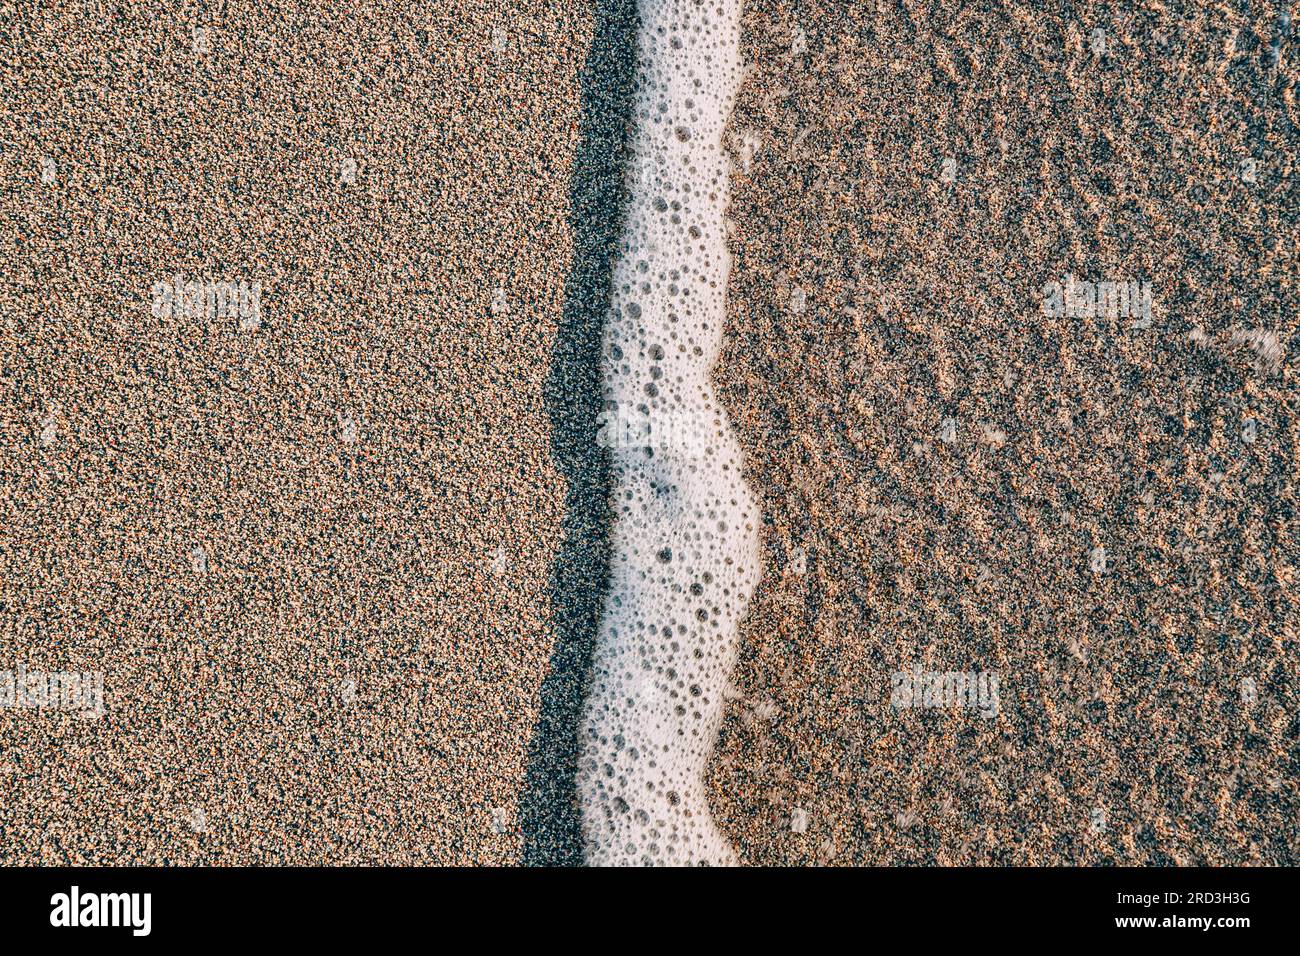 Hintergrundstruktur des Sandstrands, die die natürliche Schönheit und die einzigartigen Muster in den Sandkörnern einfängt. Stockfoto